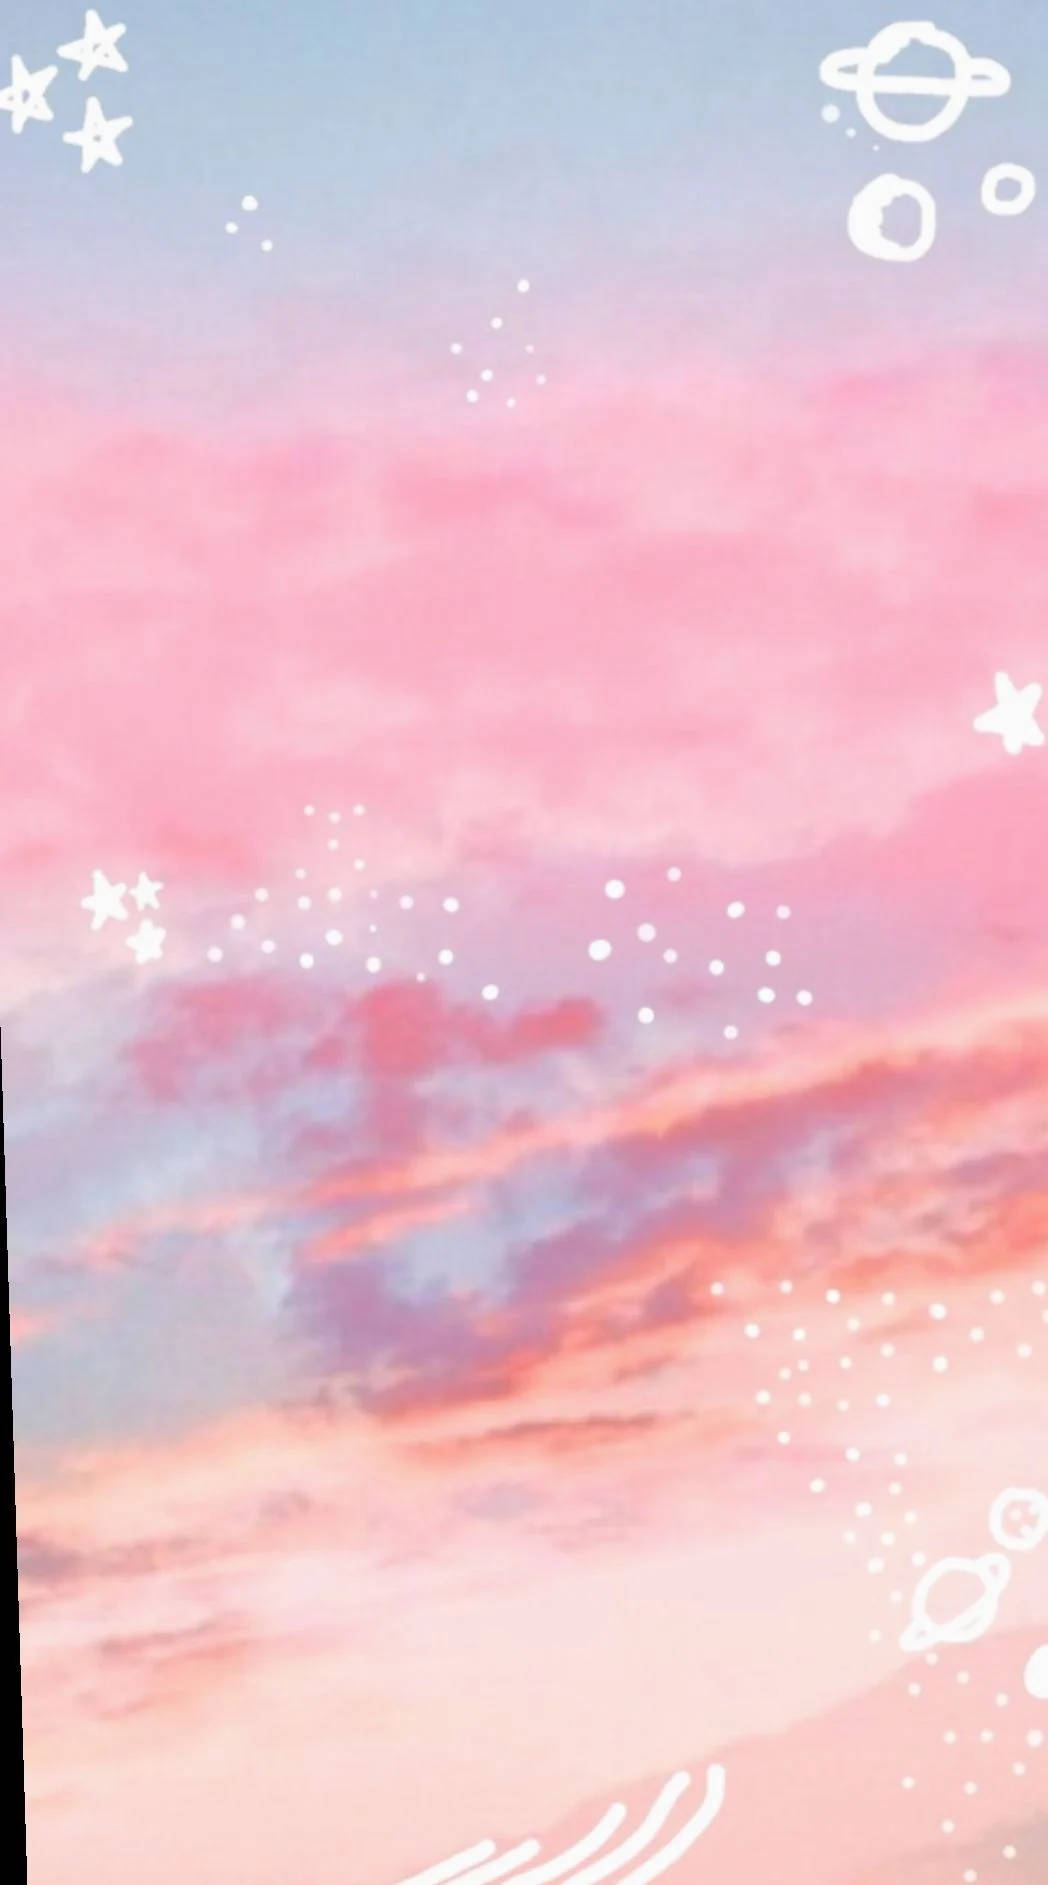 Ipad Pro Cute Aesthetic Pink Sky Wallpaper